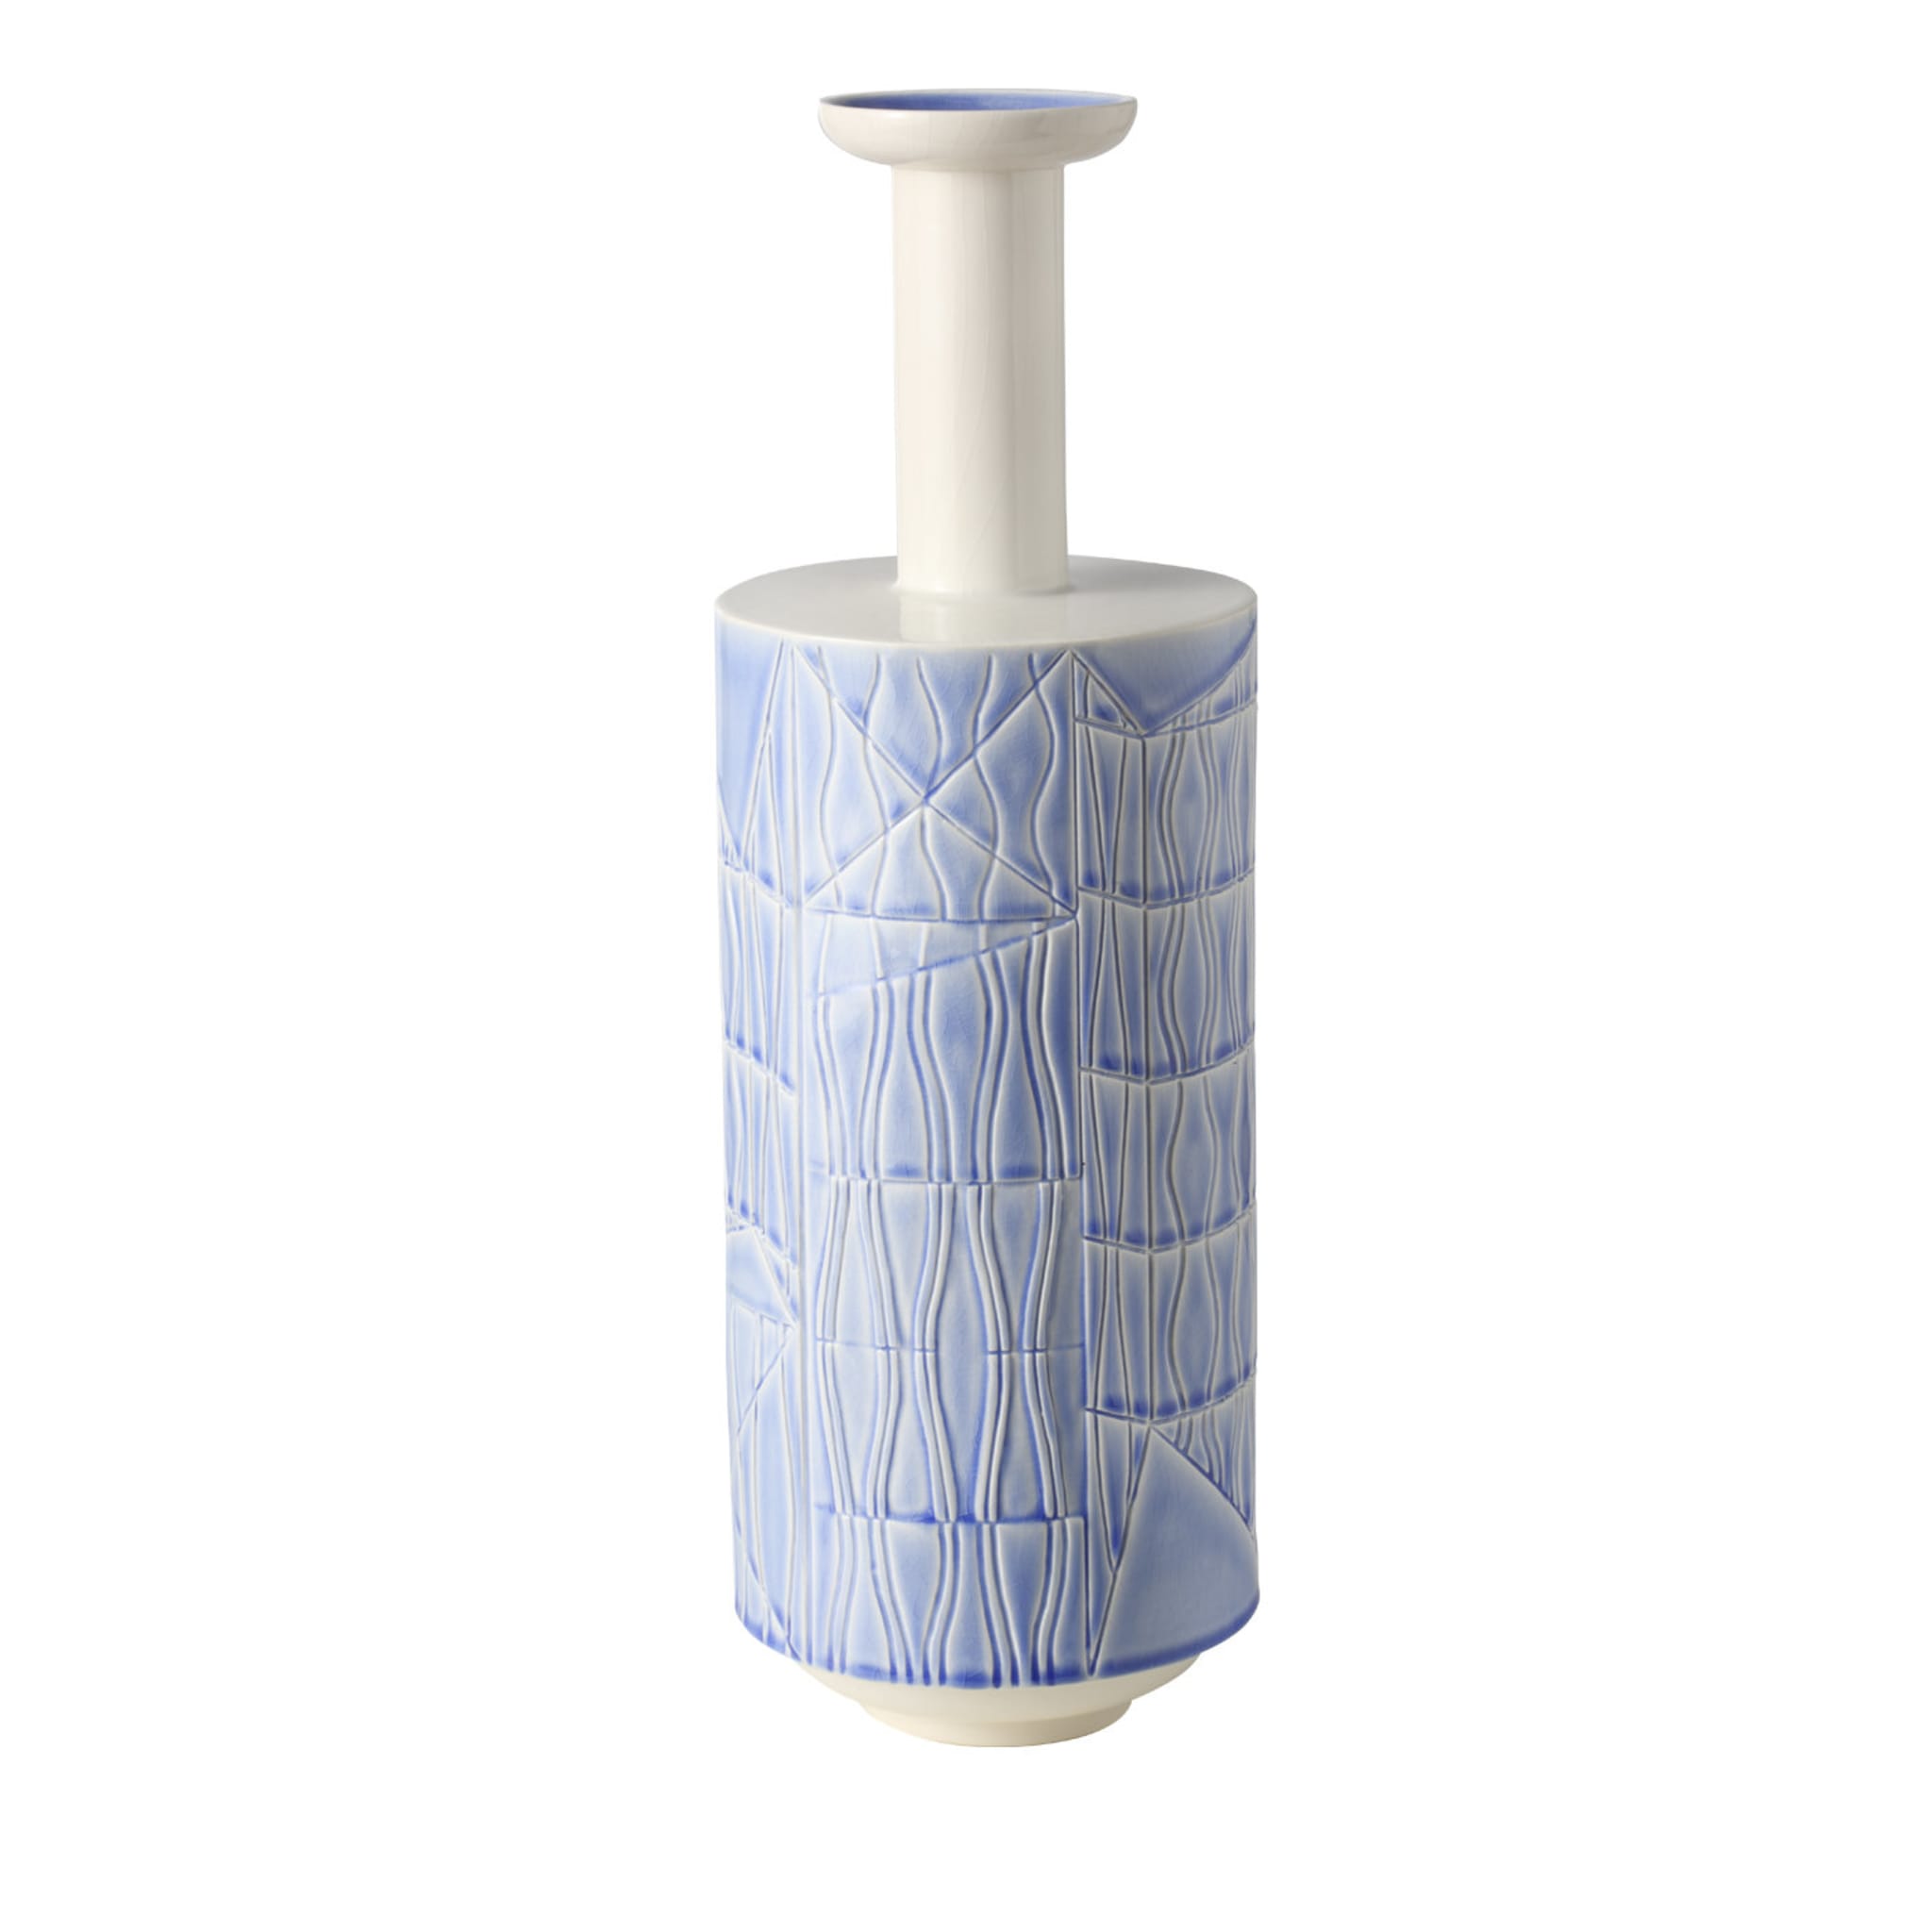 Grand vase blanc et bleu pâle par Bethan Laura Wood - Vue principale